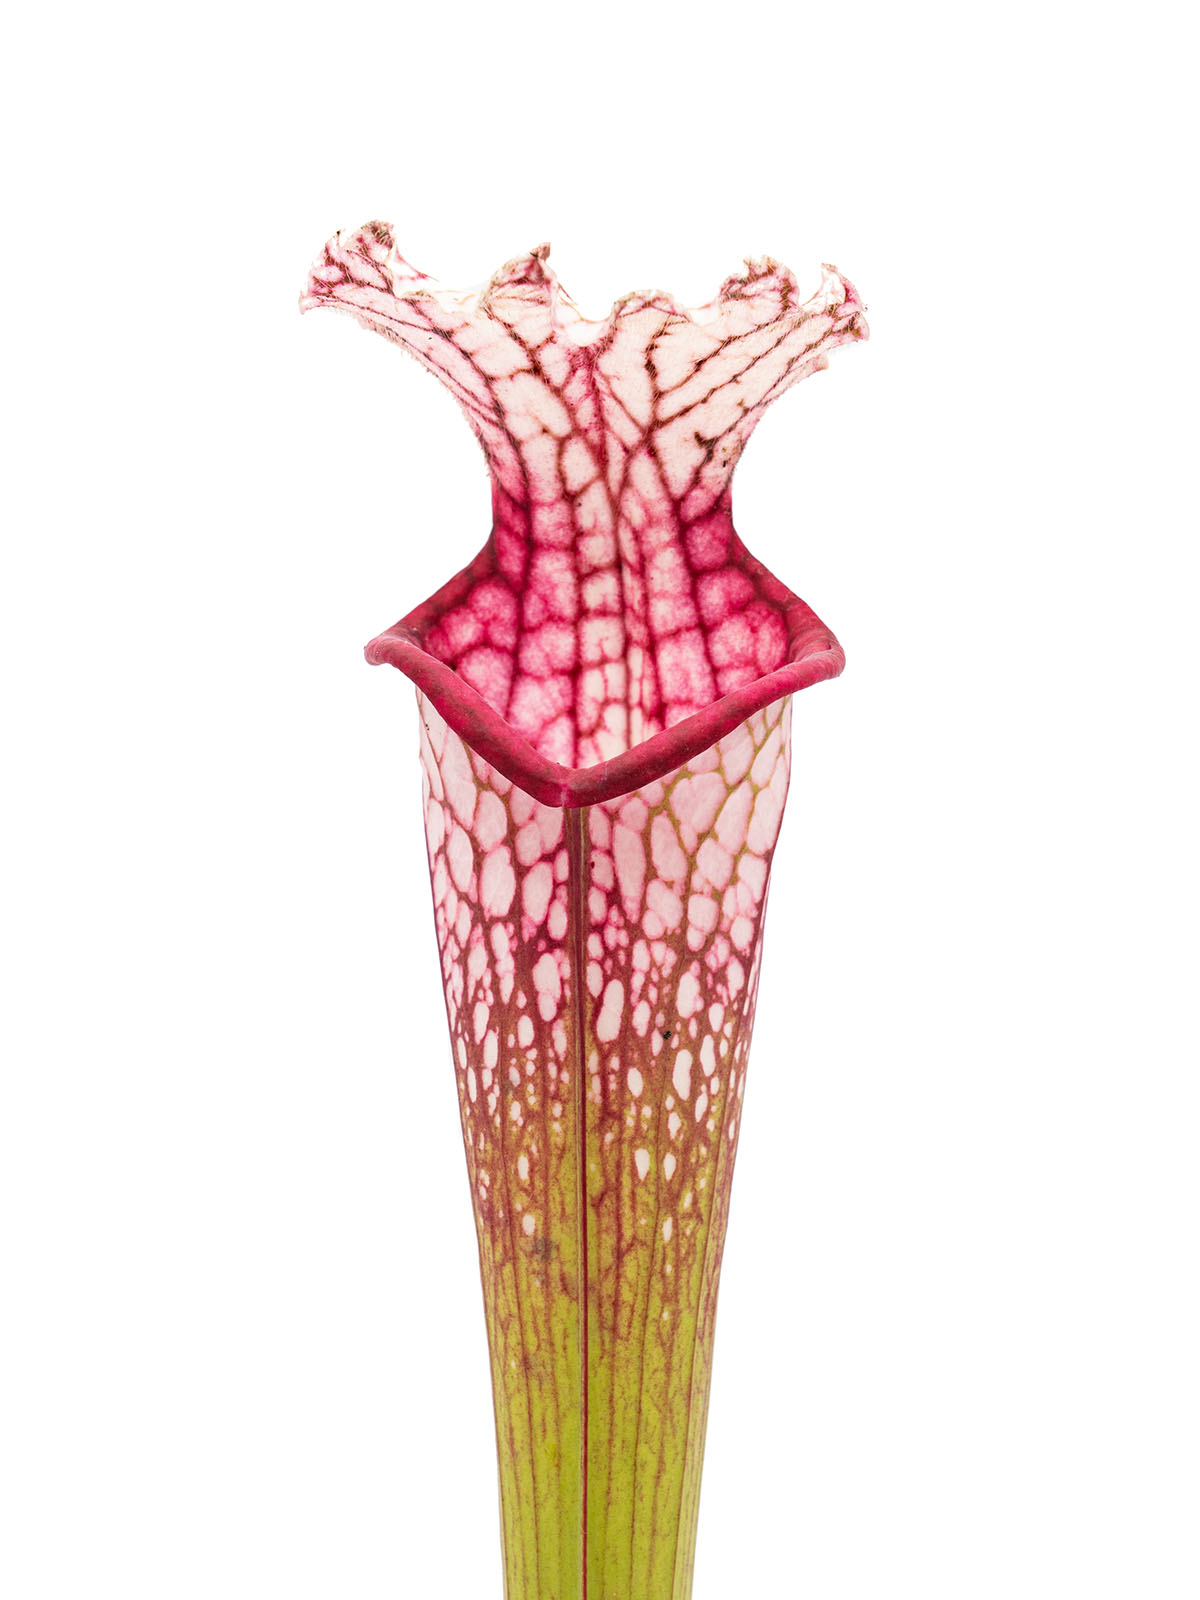 Sarracenia leucophylla - big pink lid